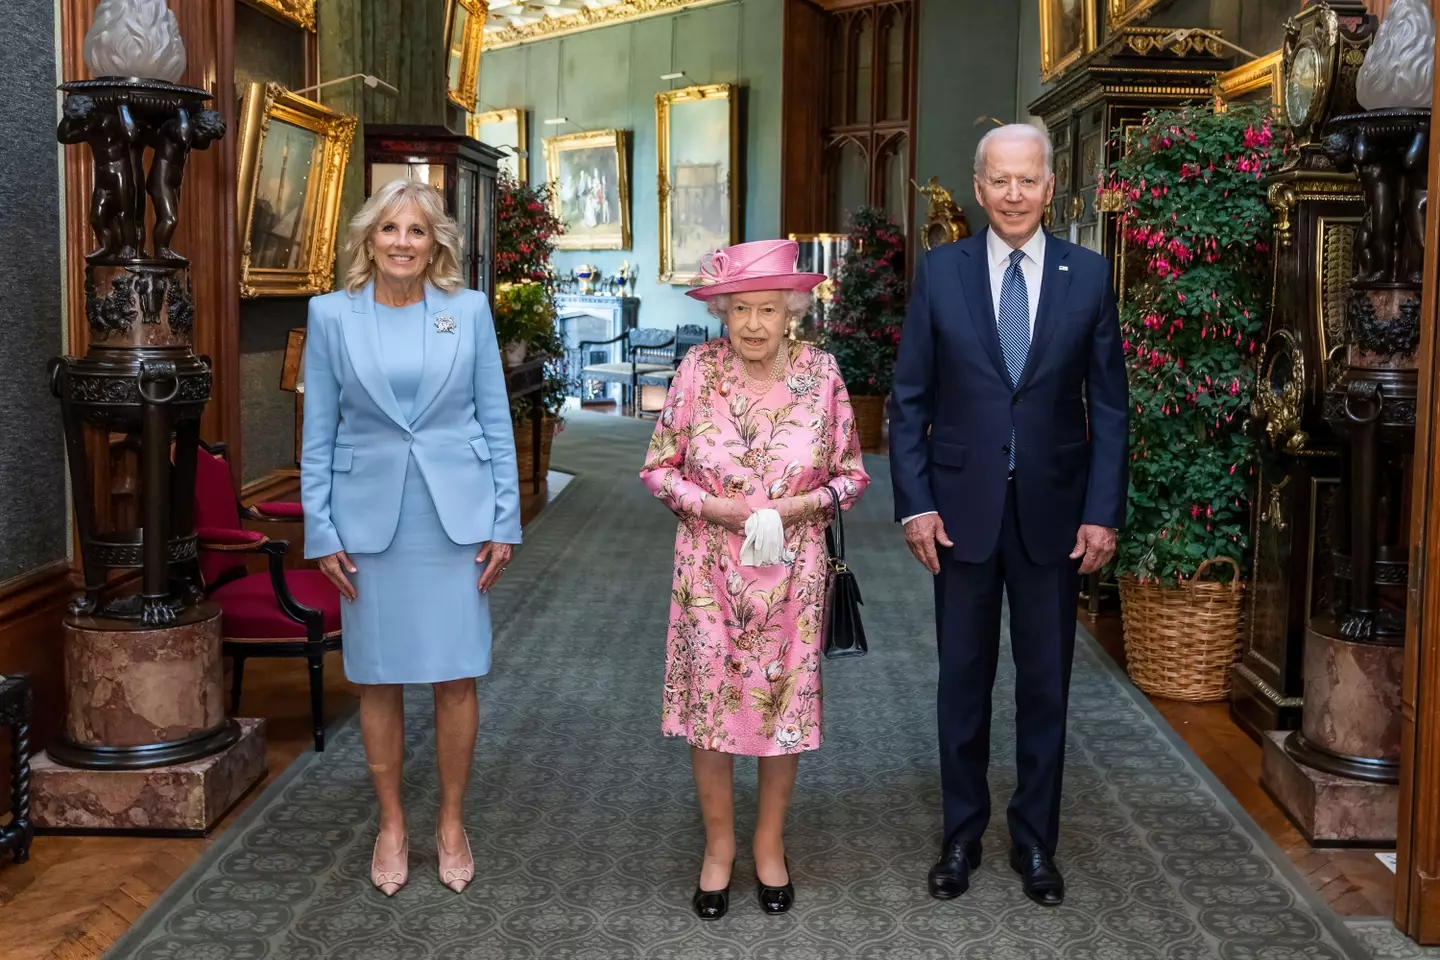 US president Joe Biden has shared a heartfelt message following the death of the Queen.